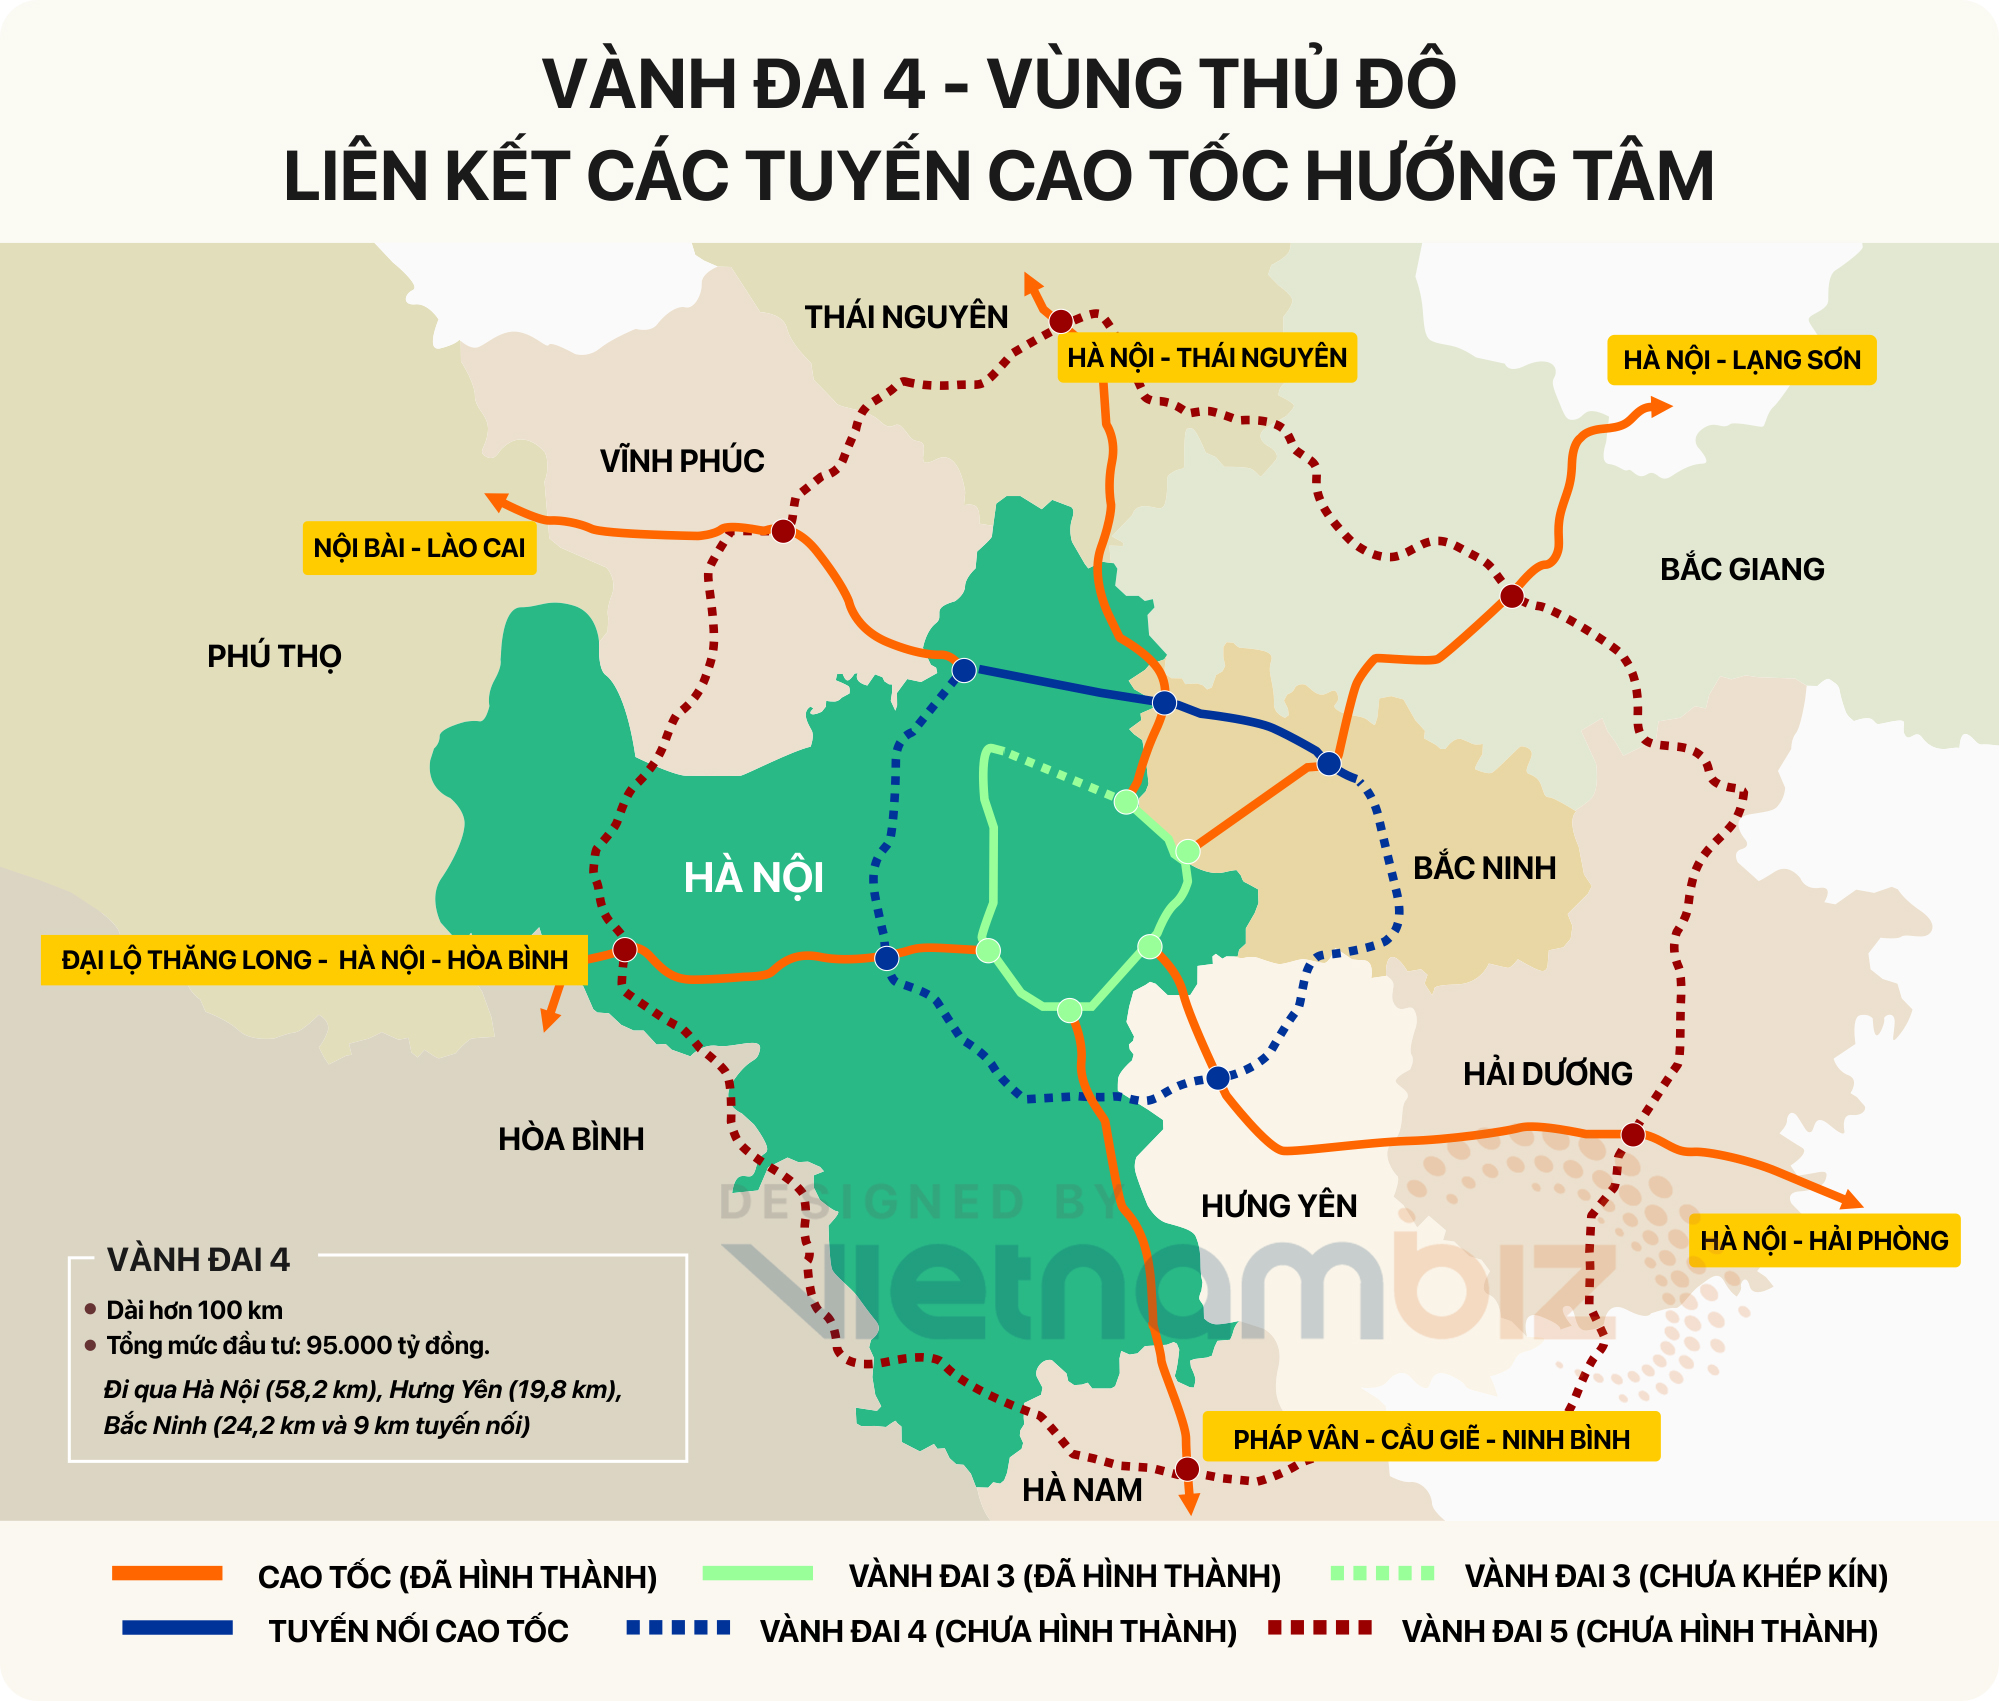 Đường cao tốc Hà Nội-Lạng Sơn đã được nâng cấp và mở rộng, giảm thiểu tình trạng ùn tắc giao thông và giúp thời gian di chuyển ngắn hơn. Tận hưởng cảm giác lái xe mượt mà, an toàn trên con đường cao tốc này bằng cách xem hình ảnh liên quan.